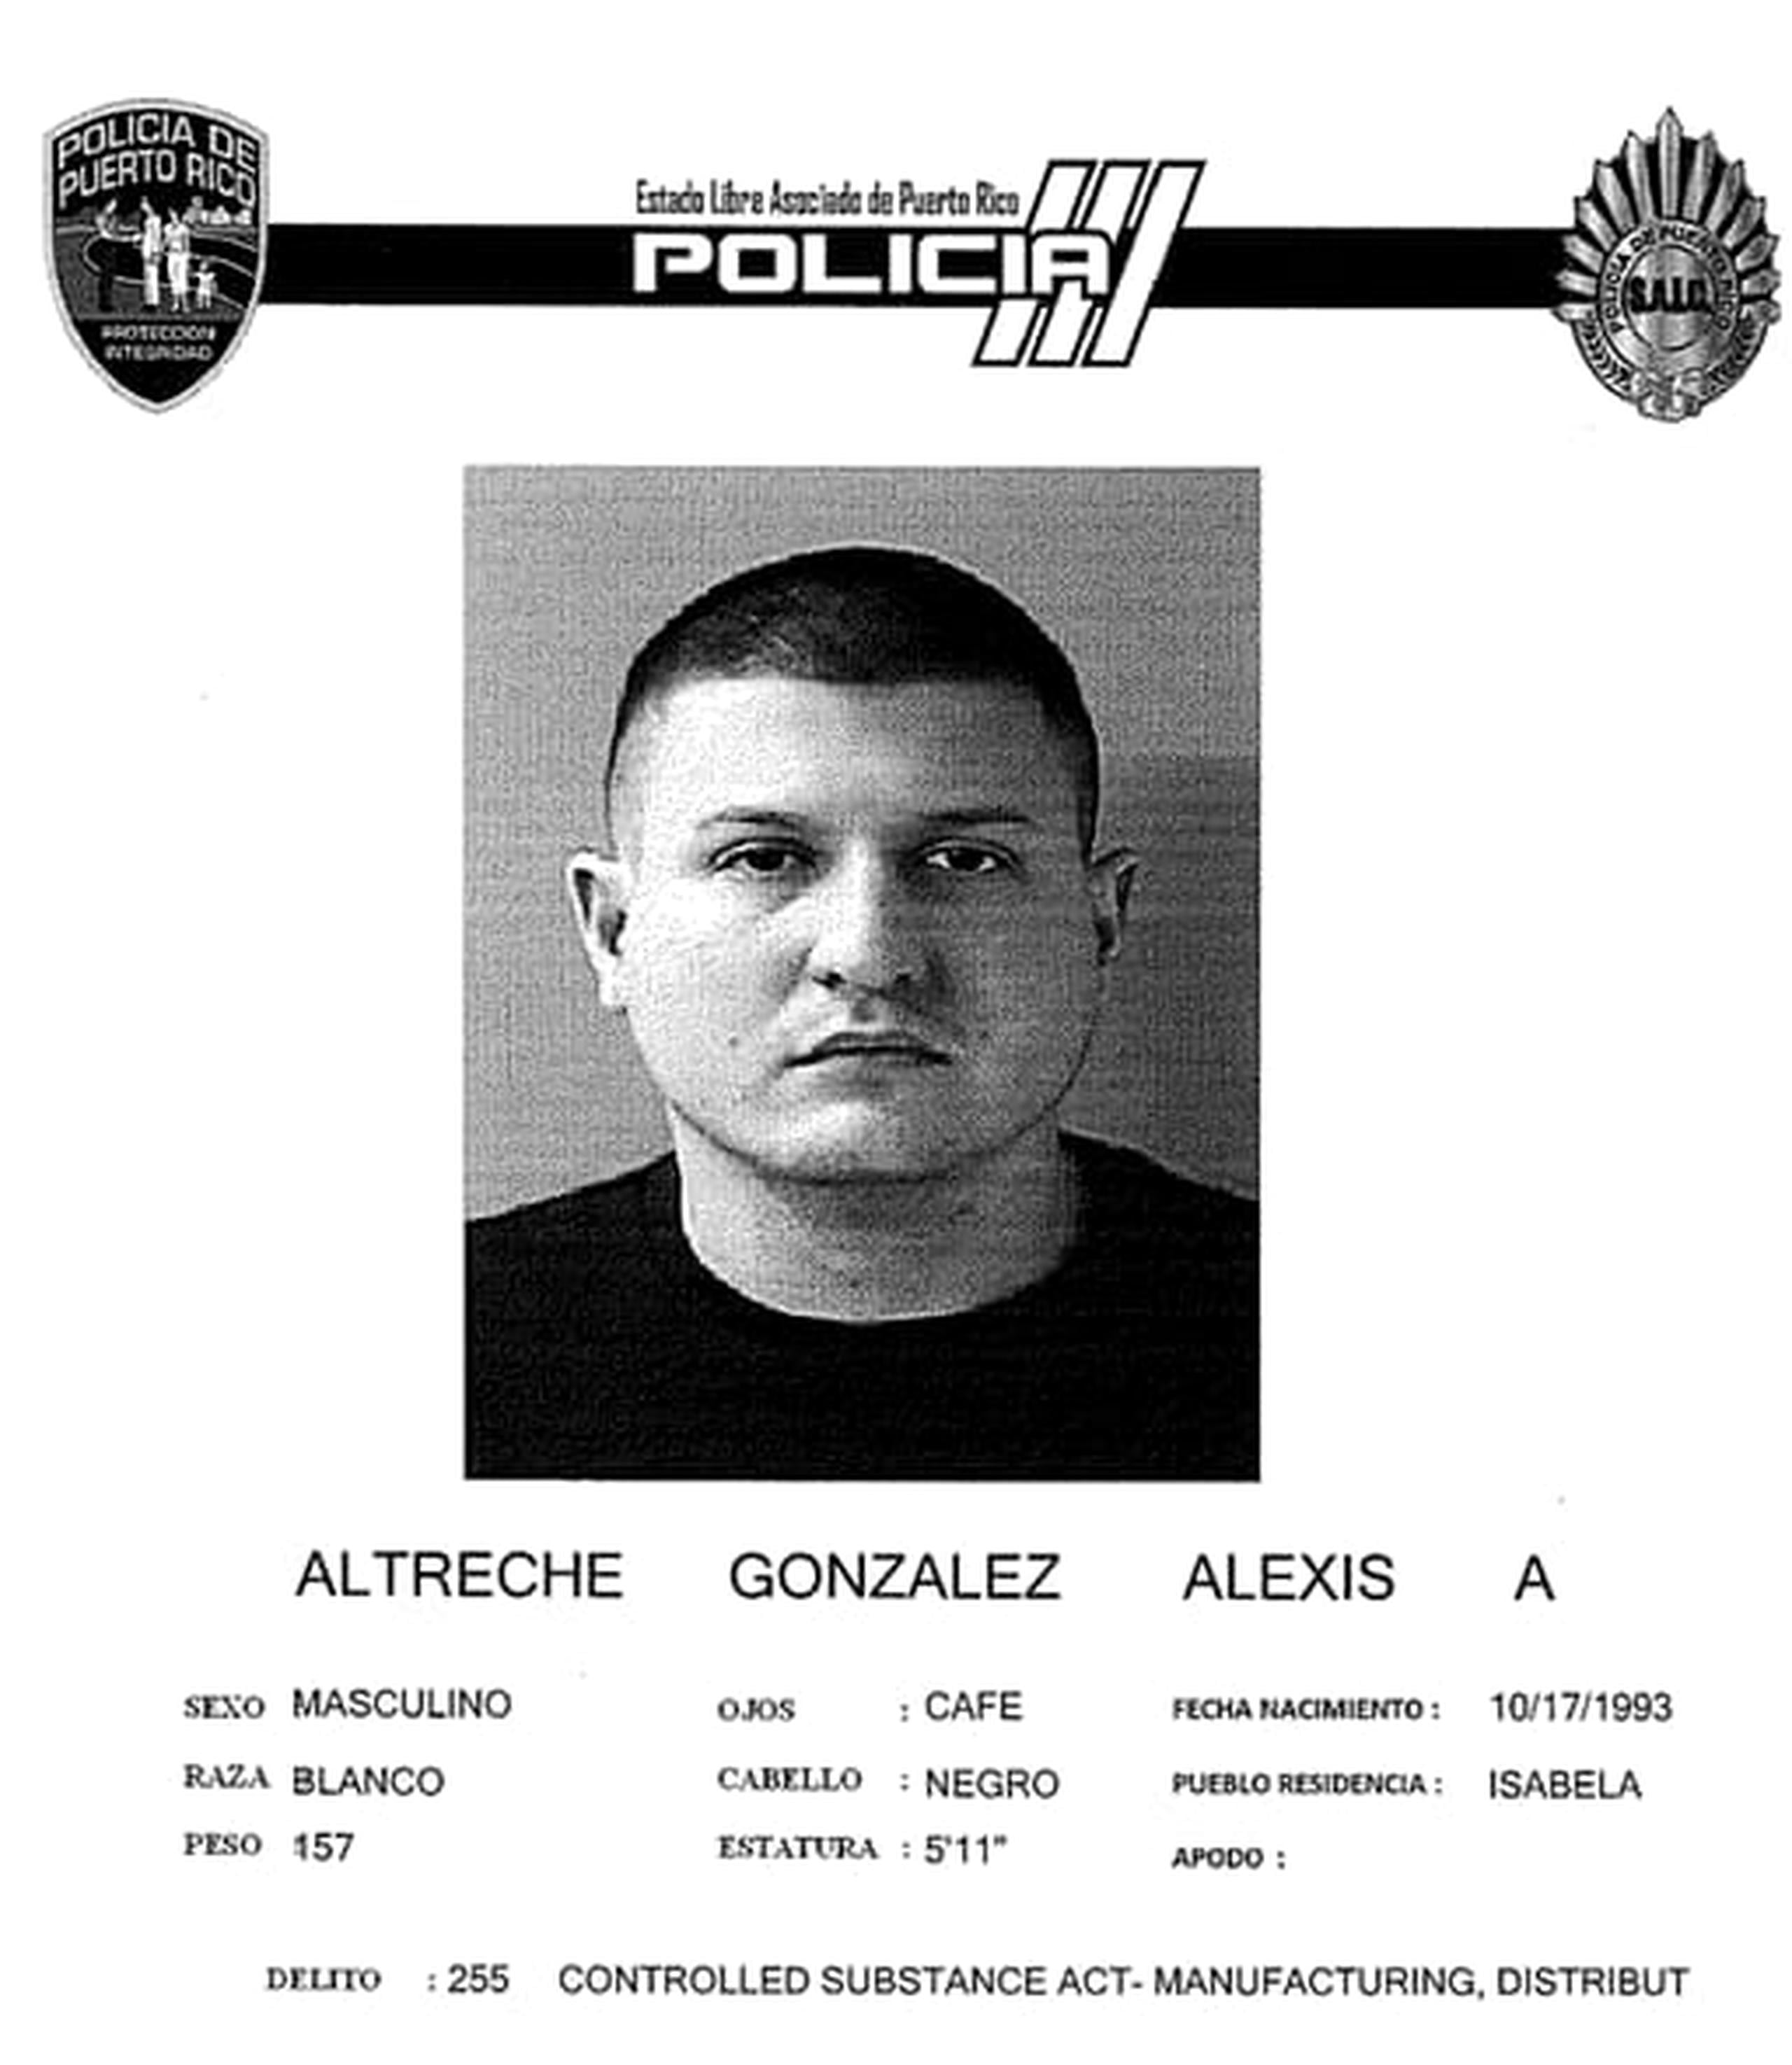 Alexis A. Altreche González enfrenta cargos por la posesión de una granada con propósitos ilegales.